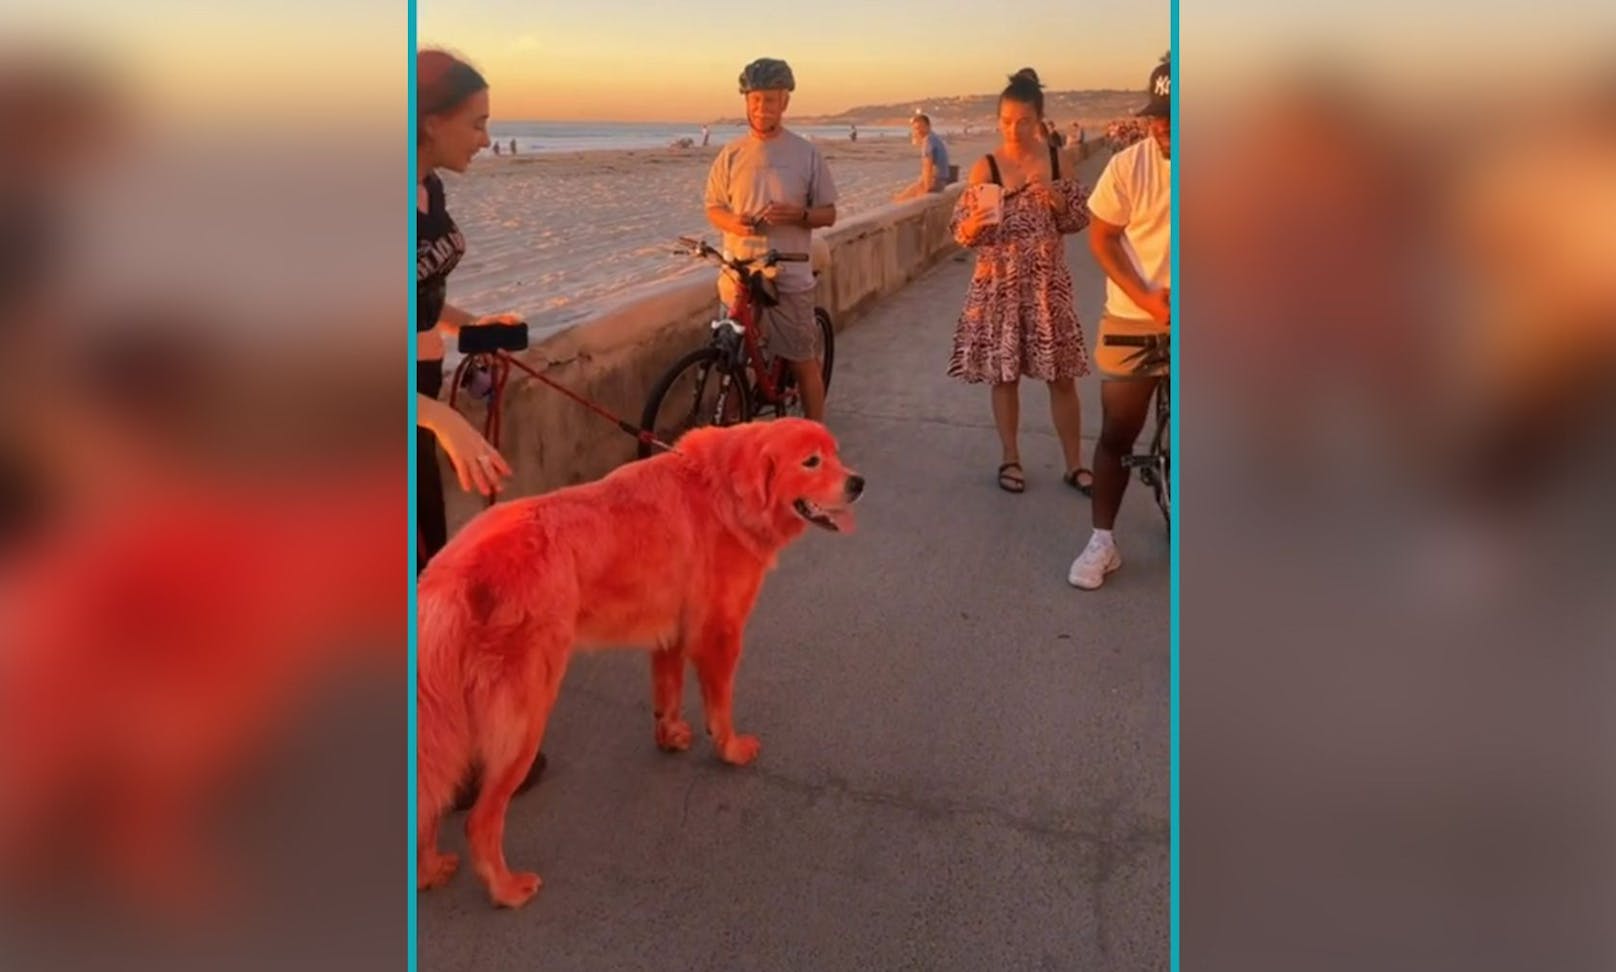 Chloe meint auch, ihr Hund liebt die Aufmerksamkeit, denn bei jedem Spaziergang bleiben die Passanten stehen um den Hund zu fotografieren. 